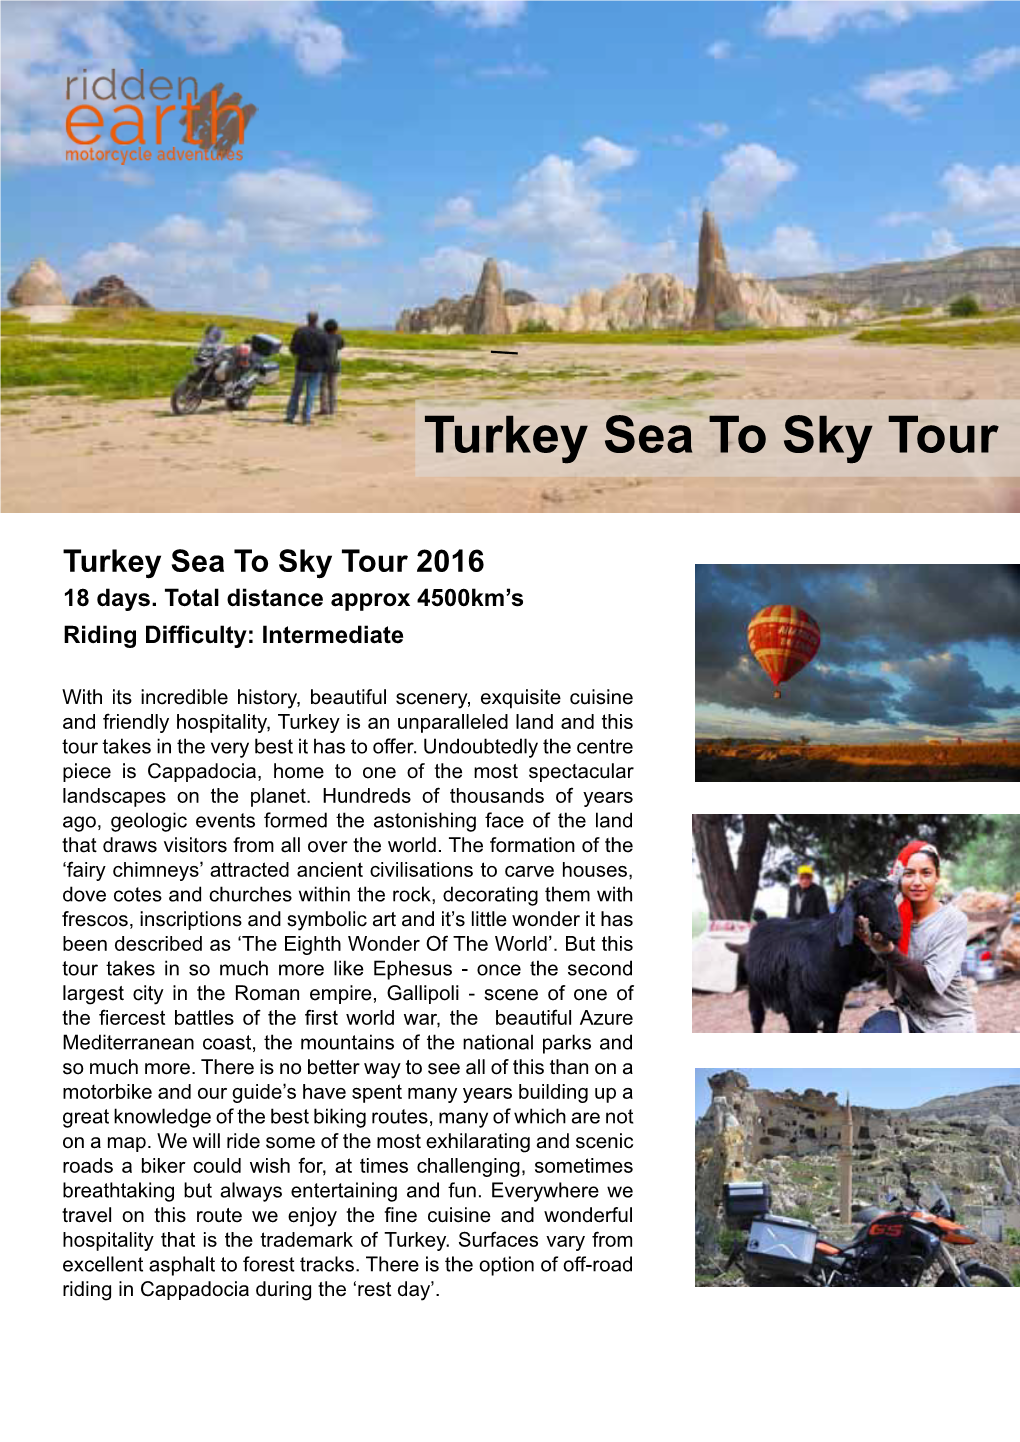 Turkey Sea to Sky Tour